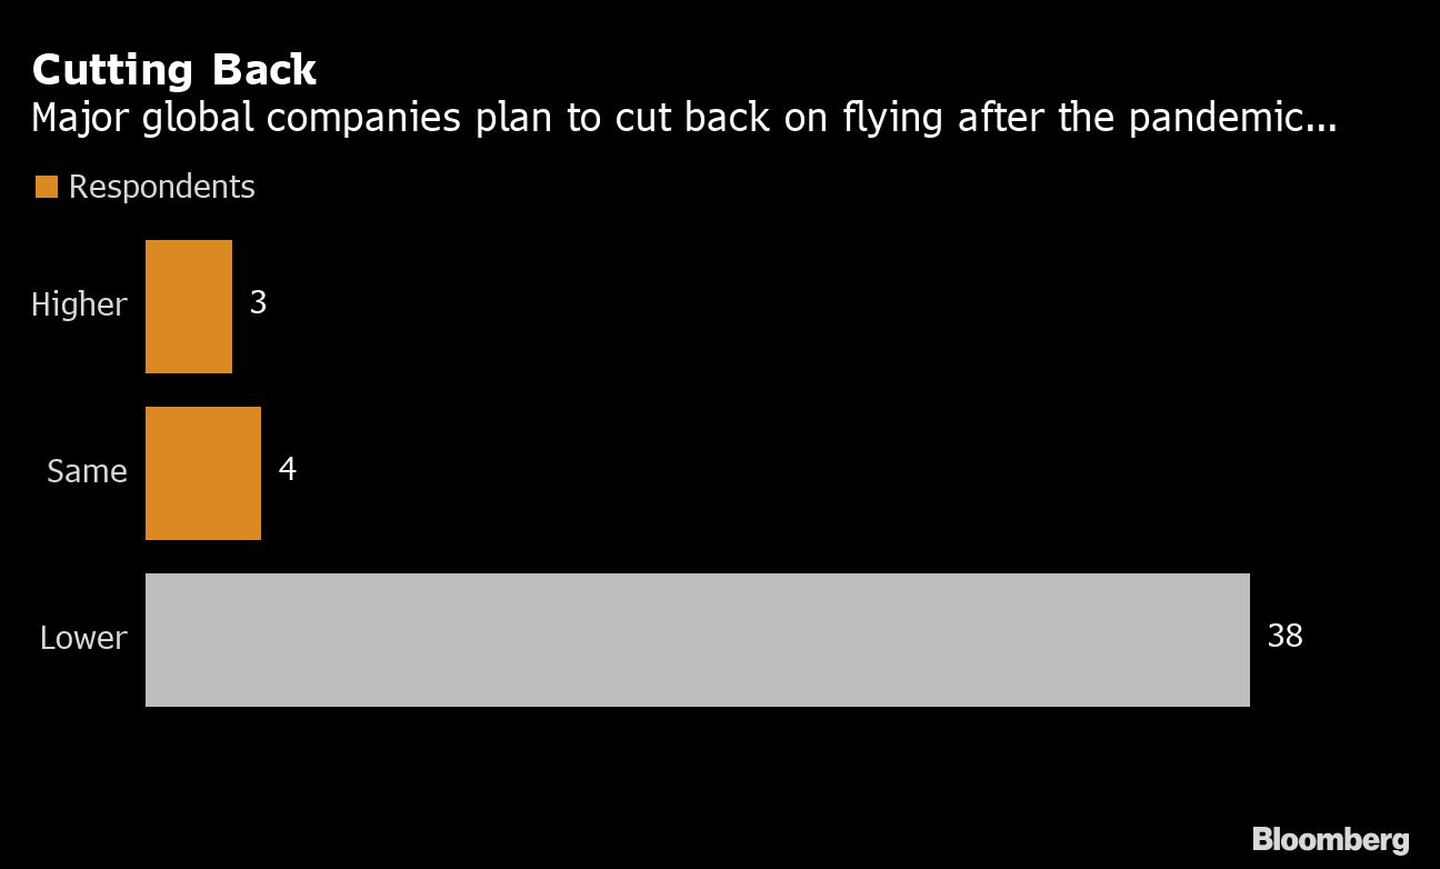 Las principales empresas mundiales planean reducir sus vuelos tras la pandemia...
Naranja: encuestados
De arriba a abajo: mayor, igual, menor
dfd